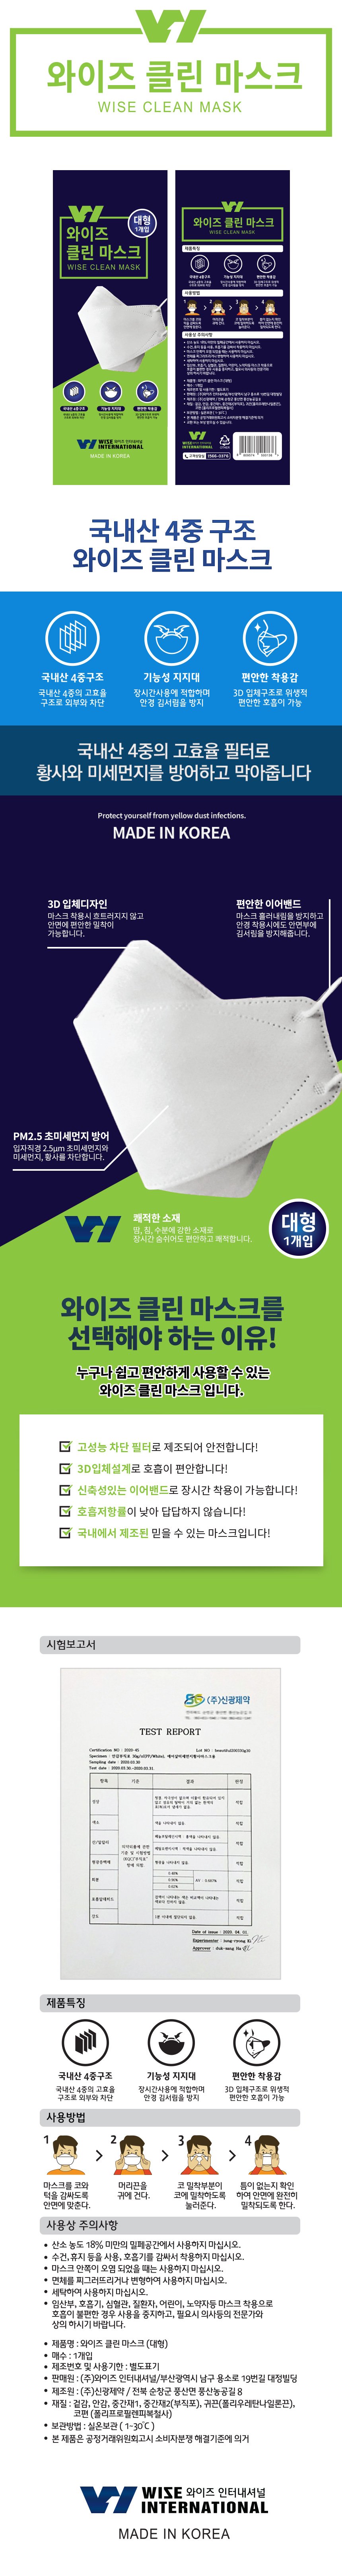 올키퍼 KF94 White 마스크 (흰색 개별포장, 무료배송) 미세먼지, 바이러스 차단, 한국산 마스크, Covid-19 코로나 시대 필수품